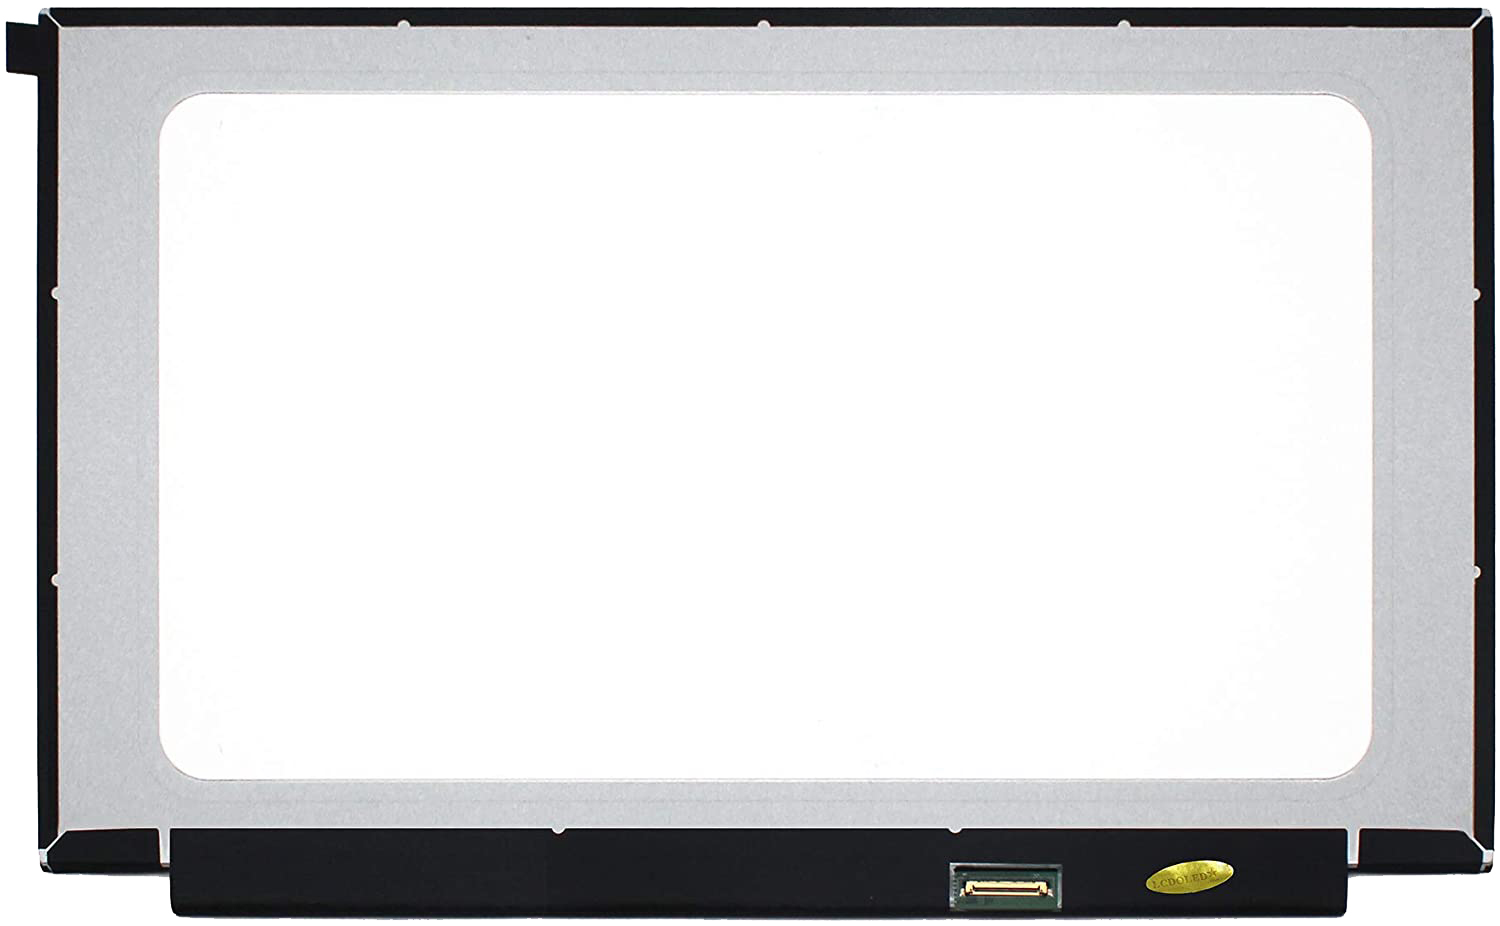 Thay màn hình Laptop Dell Inspiron 3542 Full HD IPS 3 15 inch mat sau anh goc 14